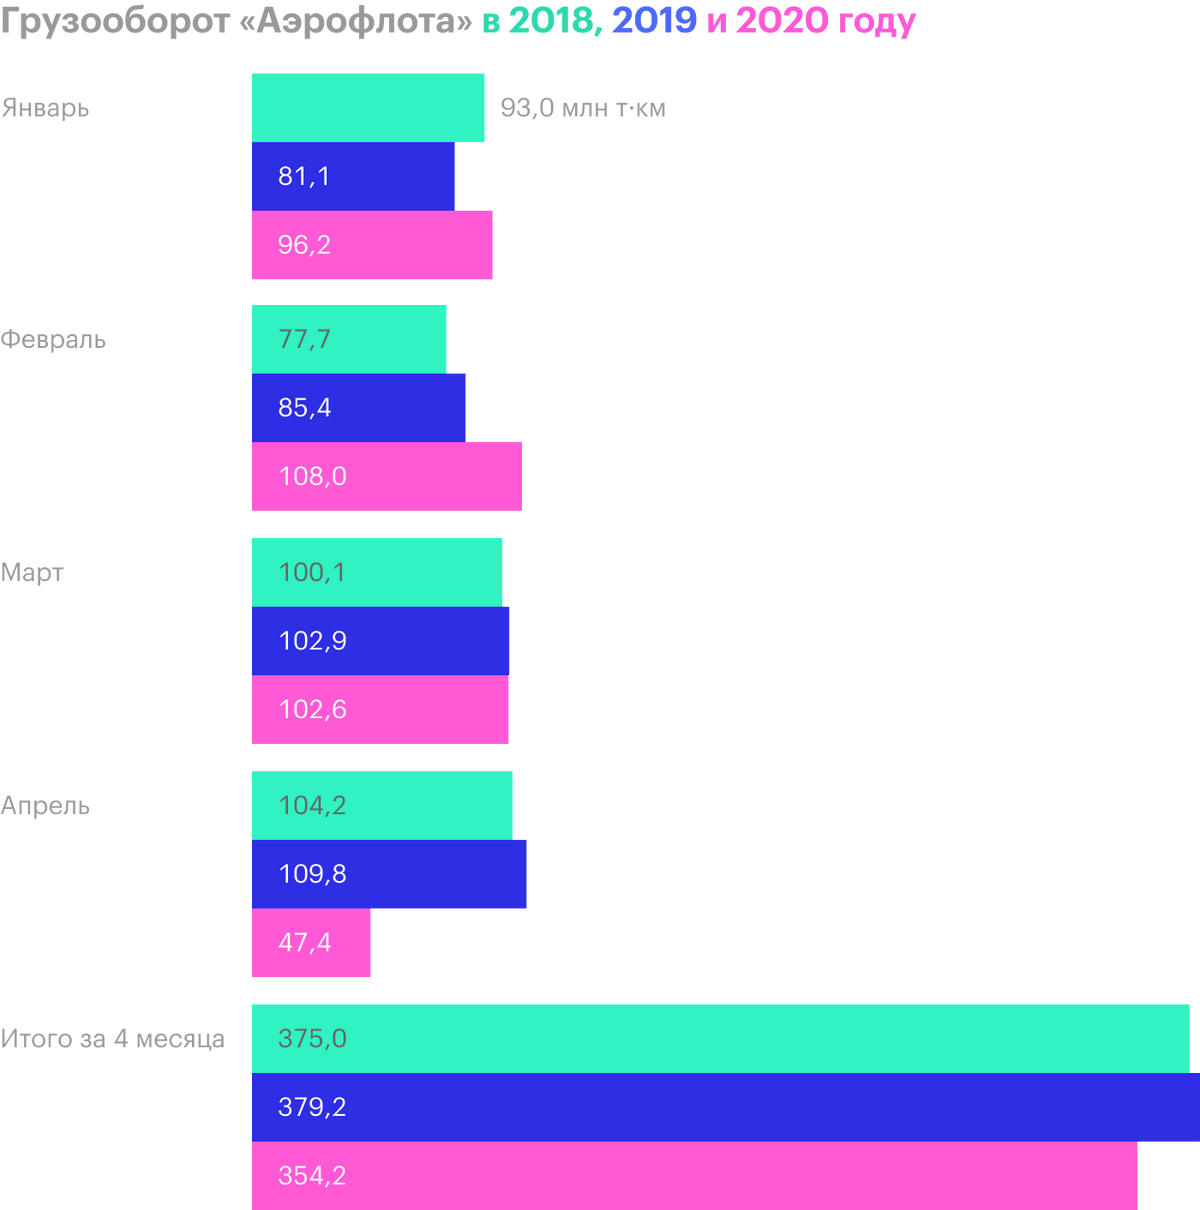 Источник: операционные результаты «Аэрофлота» за апрель 2020&nbsp;года